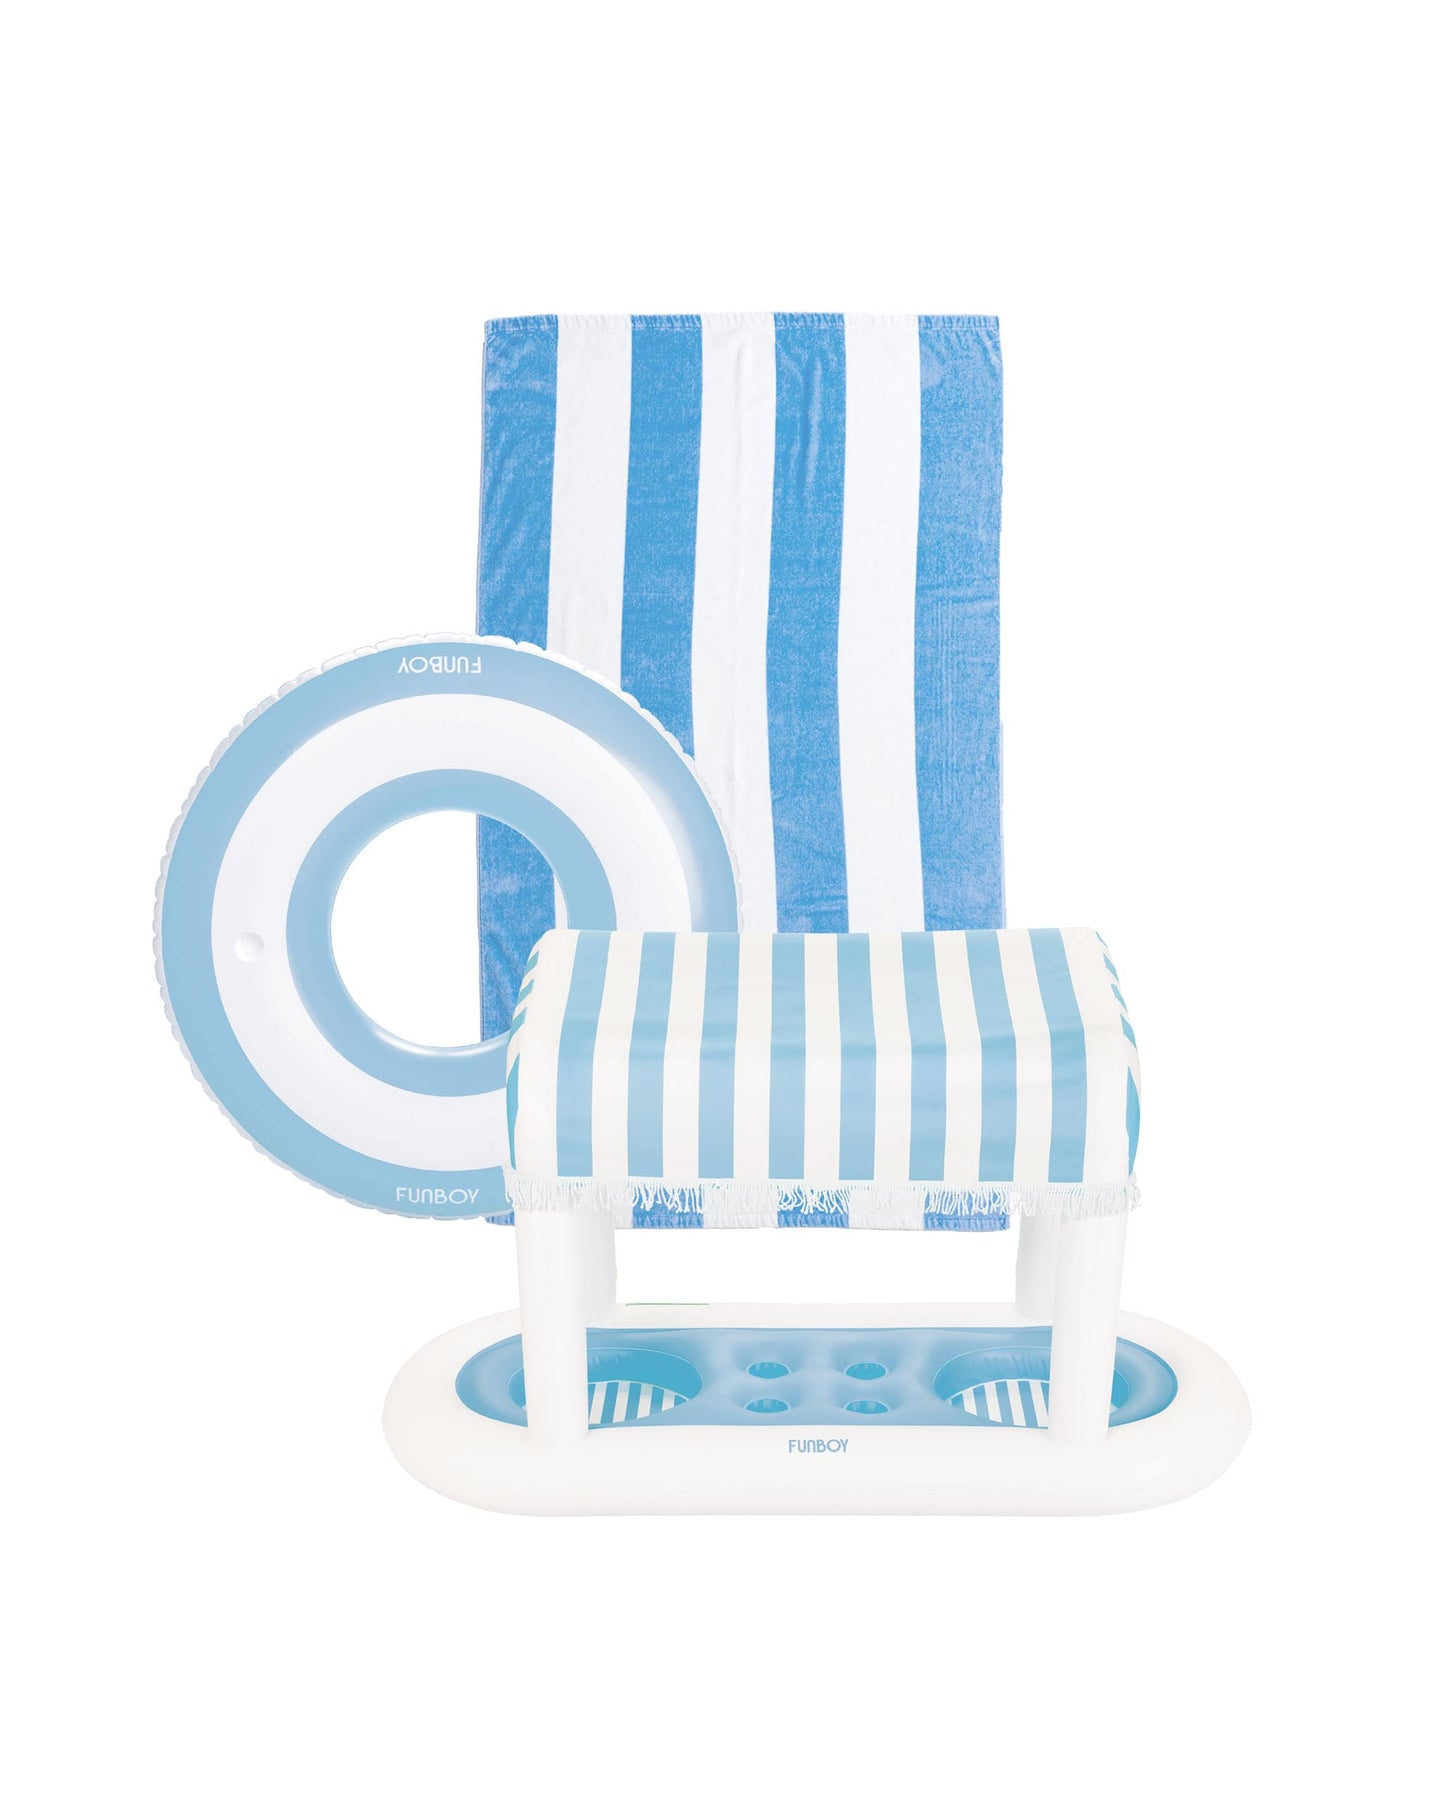 Blue & White Striped Cabana Floating Bar, Towel, Tube